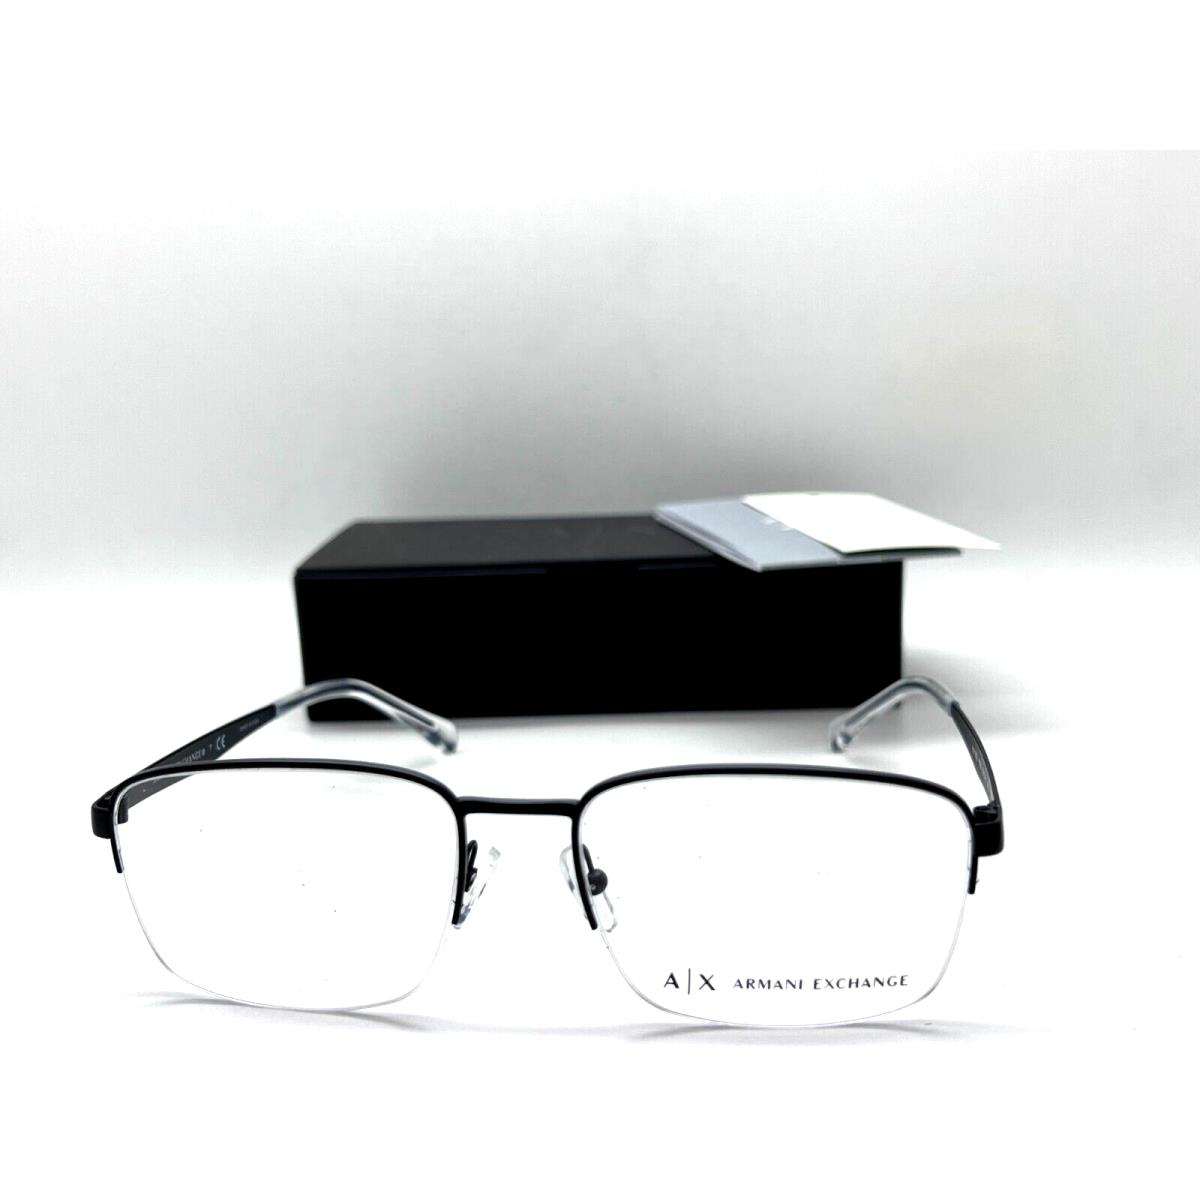 Armani Exchange eyeglasses  - MATTE BLACK Frame, Clear Demo Lens Lens 0